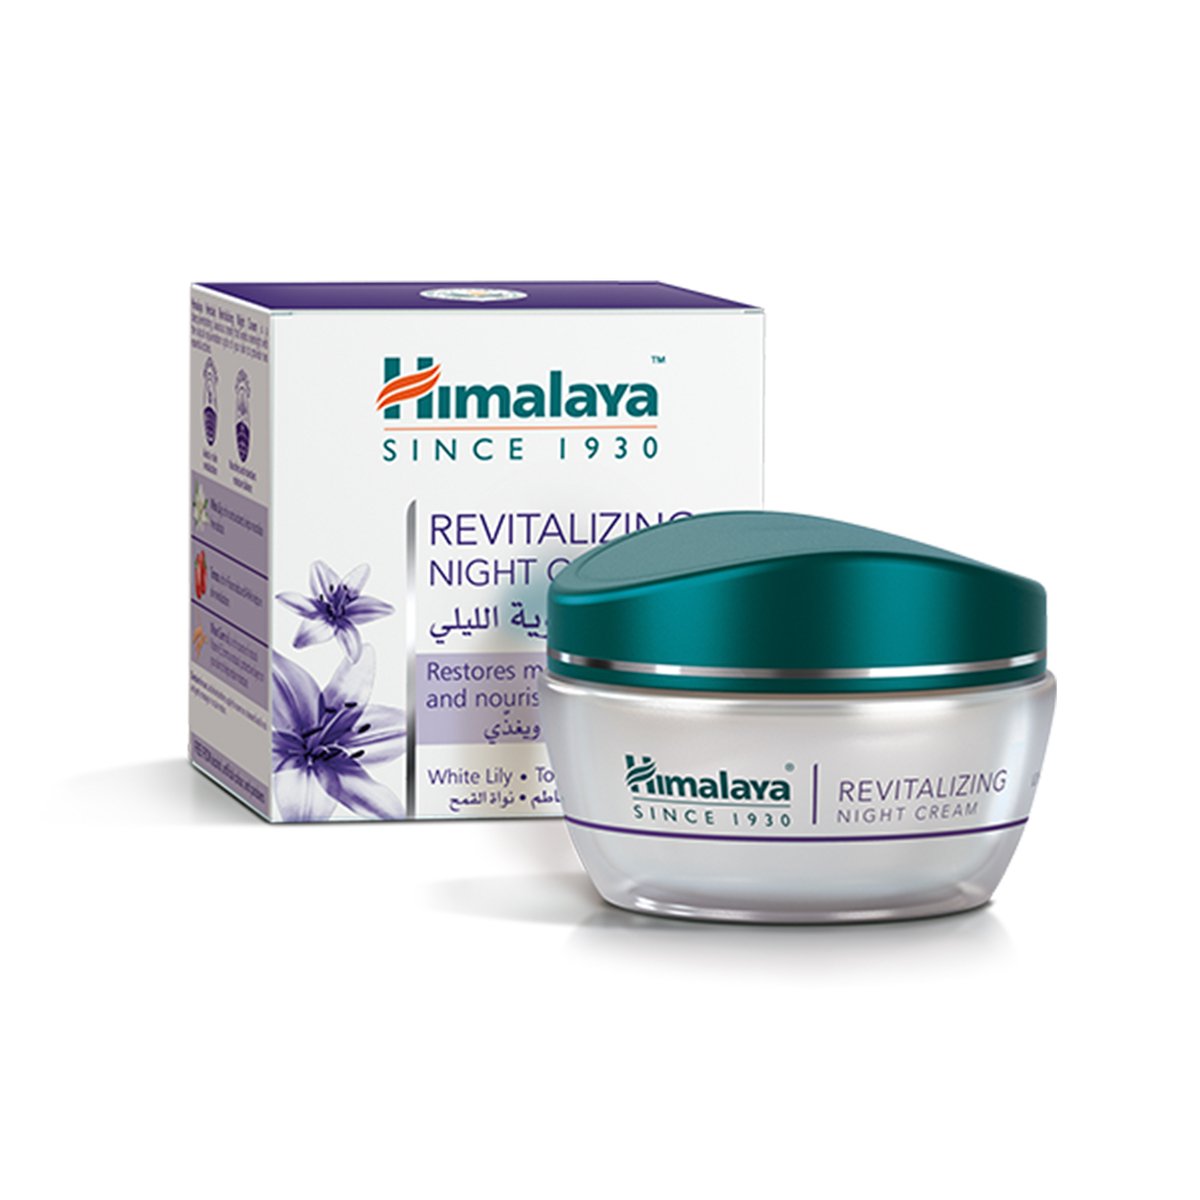 Himalaya Night Cream Revitalizing 50 g